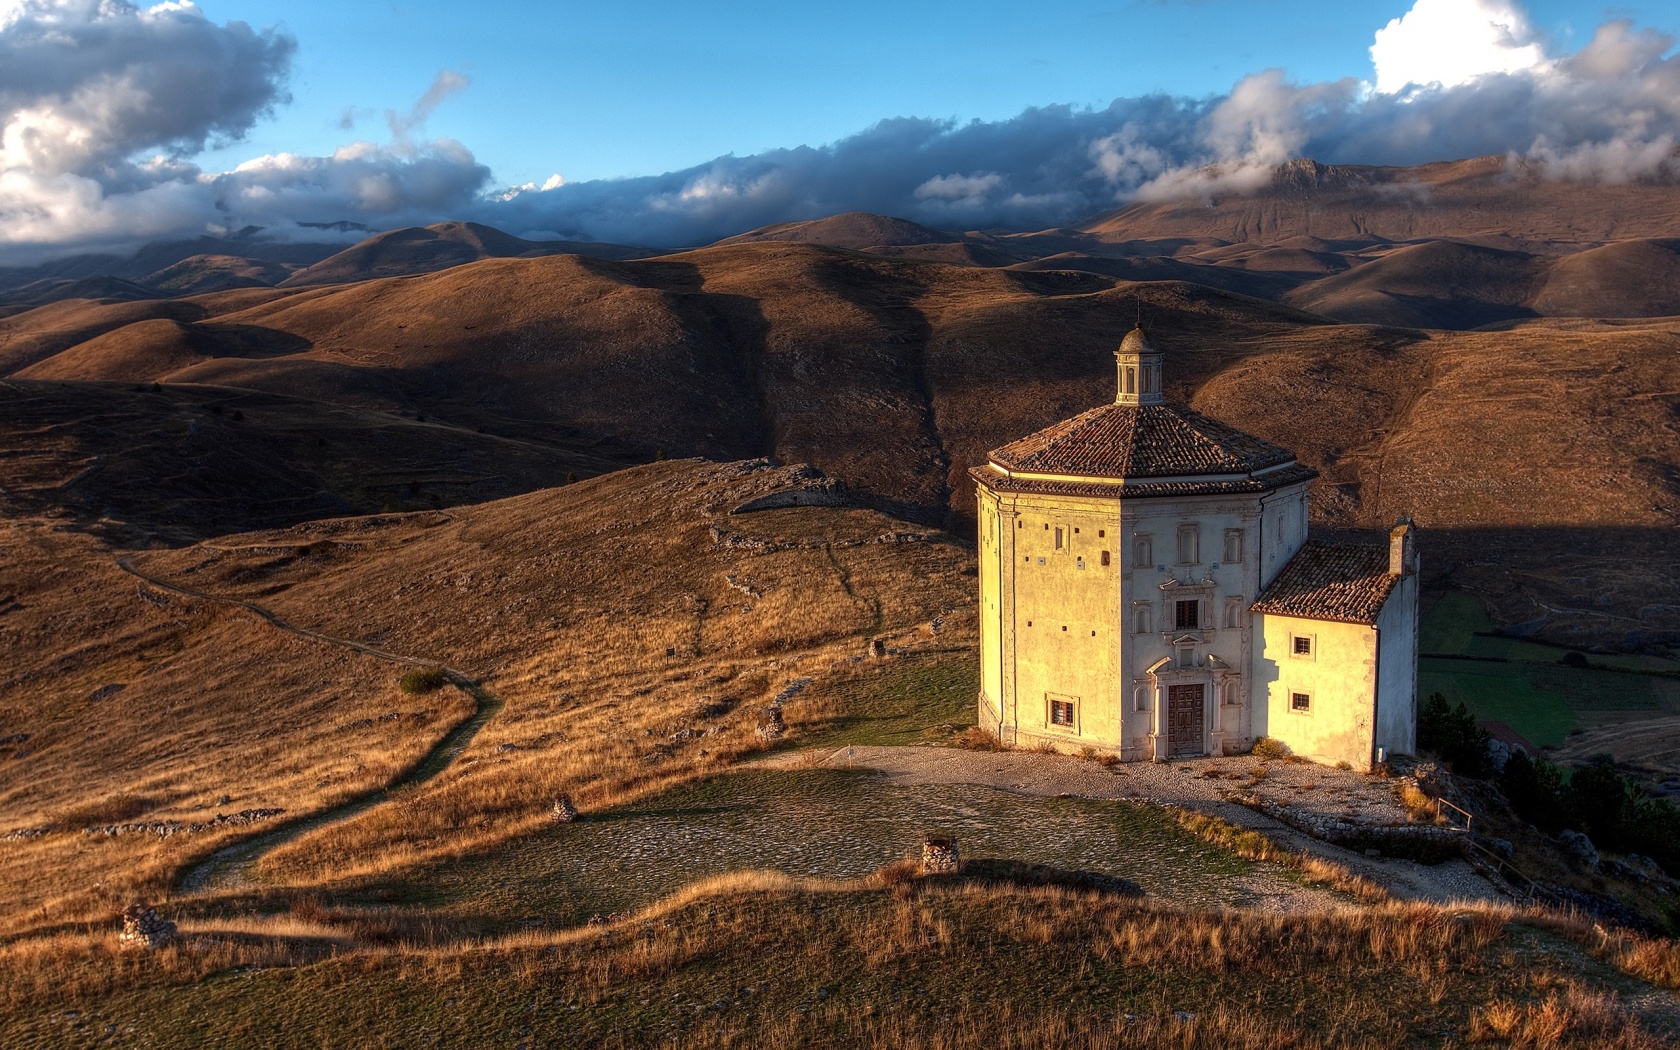 Церковь в Италии обои